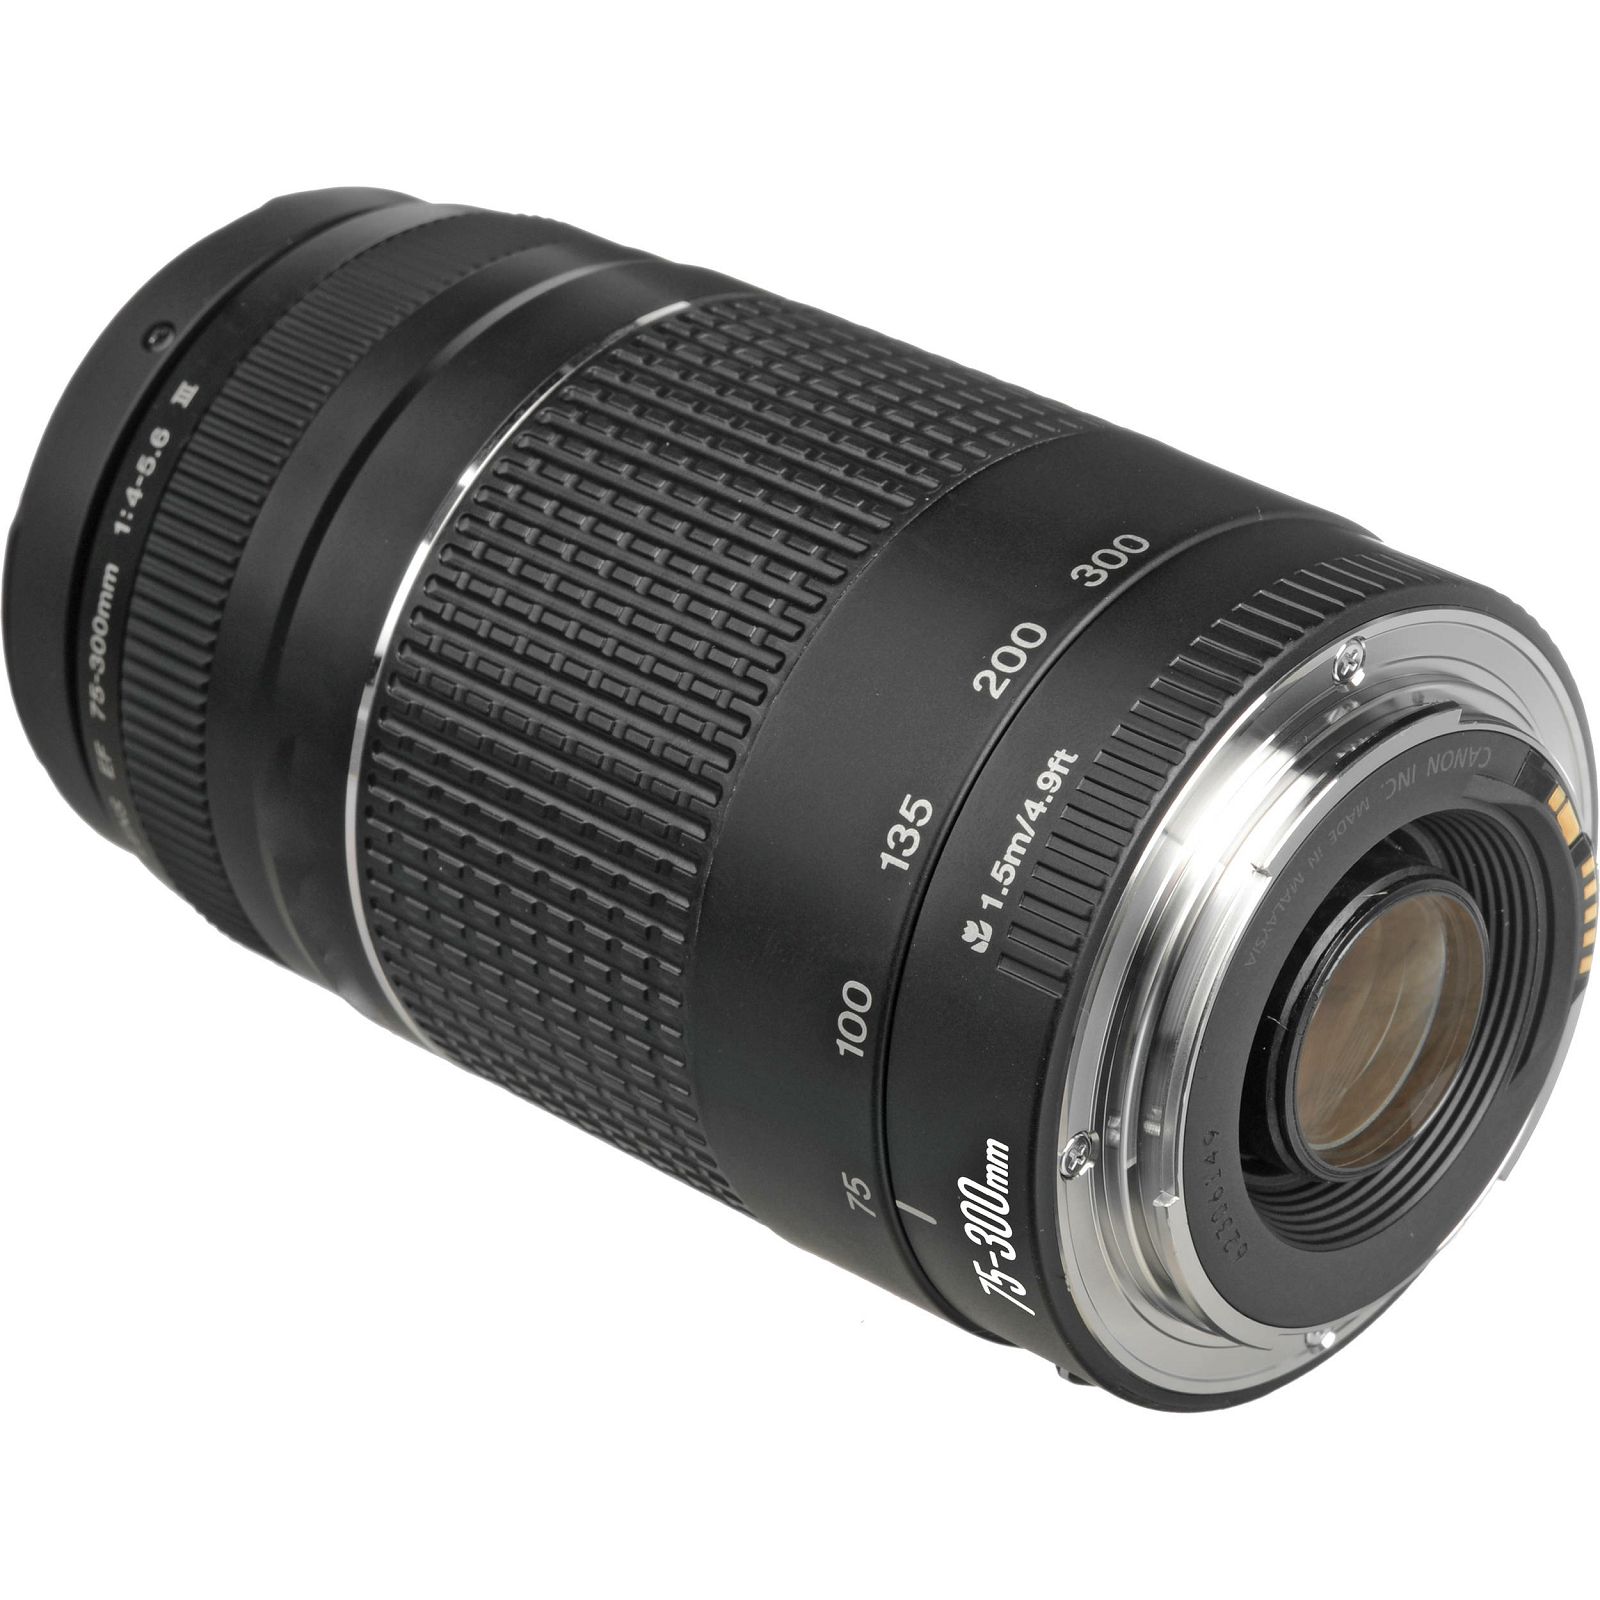 Canon EOS 4000D + 18-55 DC III + 75-300 KIT Black DSLR Digitalni fotoaparat s dva objektiva EF-S 18-55mm f/3.5-5.6 i EF 75-300mm f/4-5.6 III (3011C020AA)